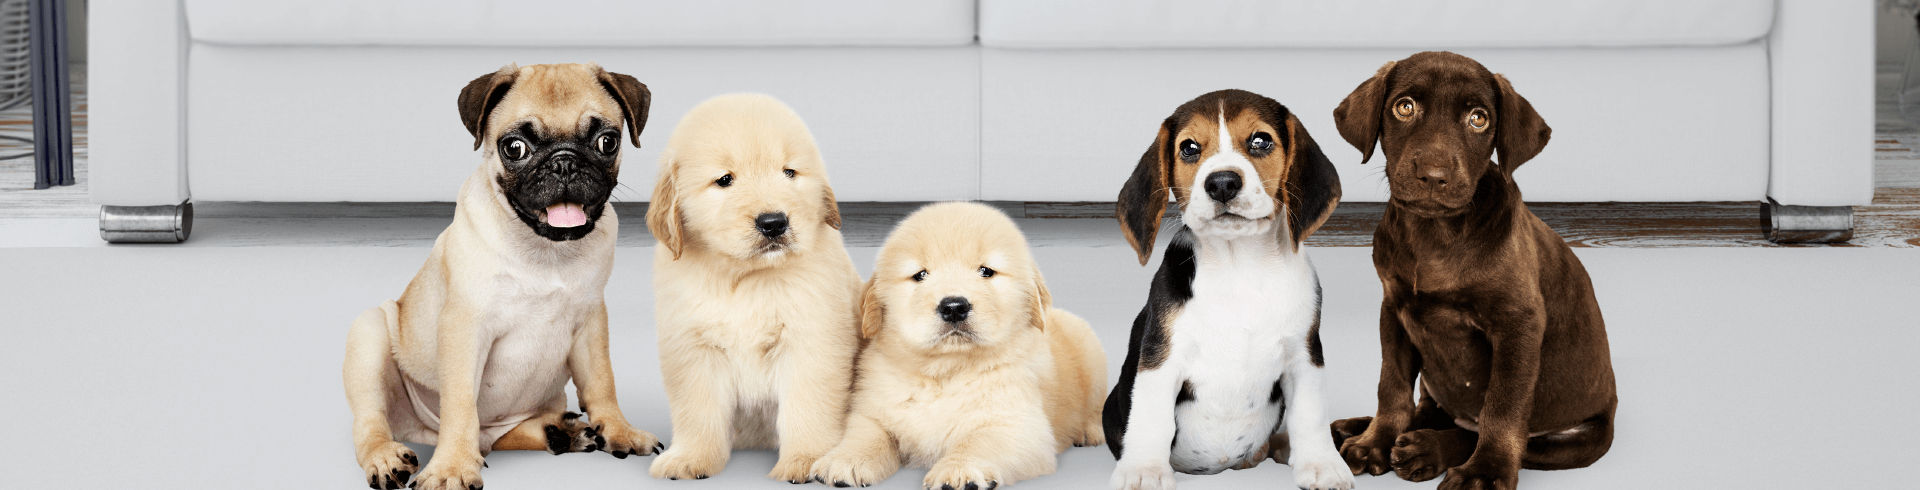 Las mejores razas de perros para niños-Petys